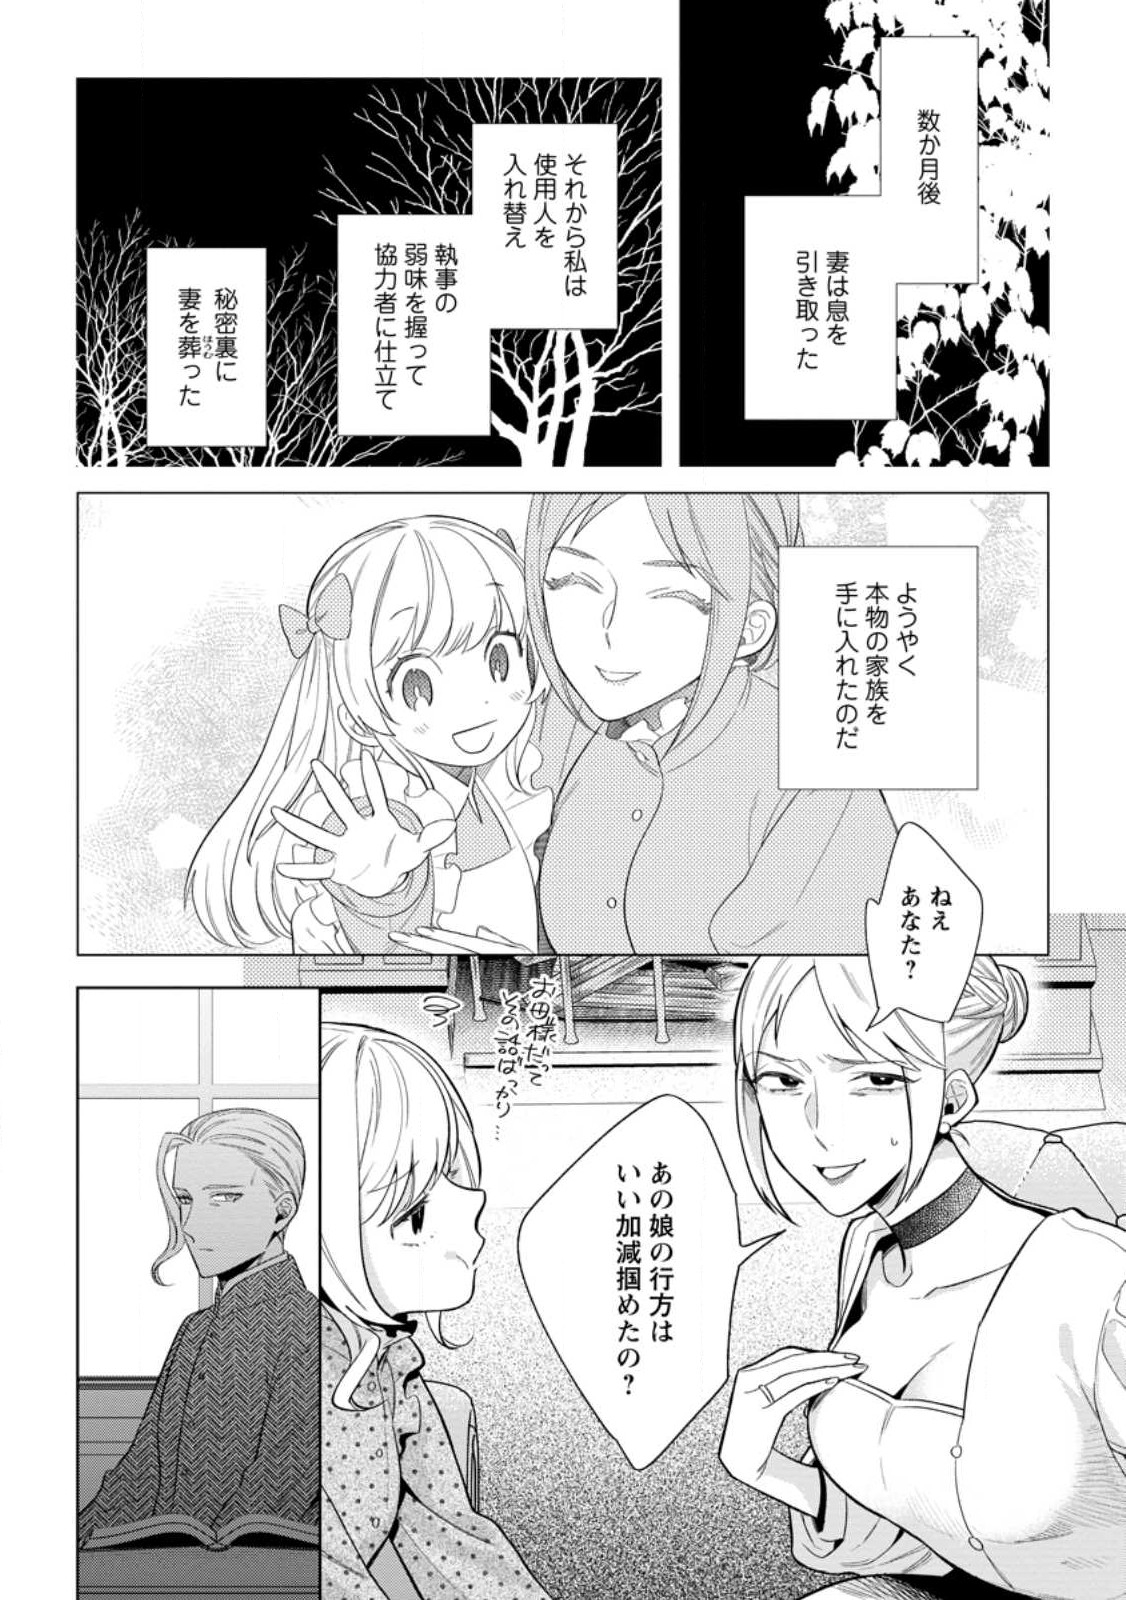 Dare ni mo Aisarenai no de Yuka wo Migaite Itara Soko ga Seiiki-ka shita Reijou no Hanashi - Chapter 12.3 - Page 2